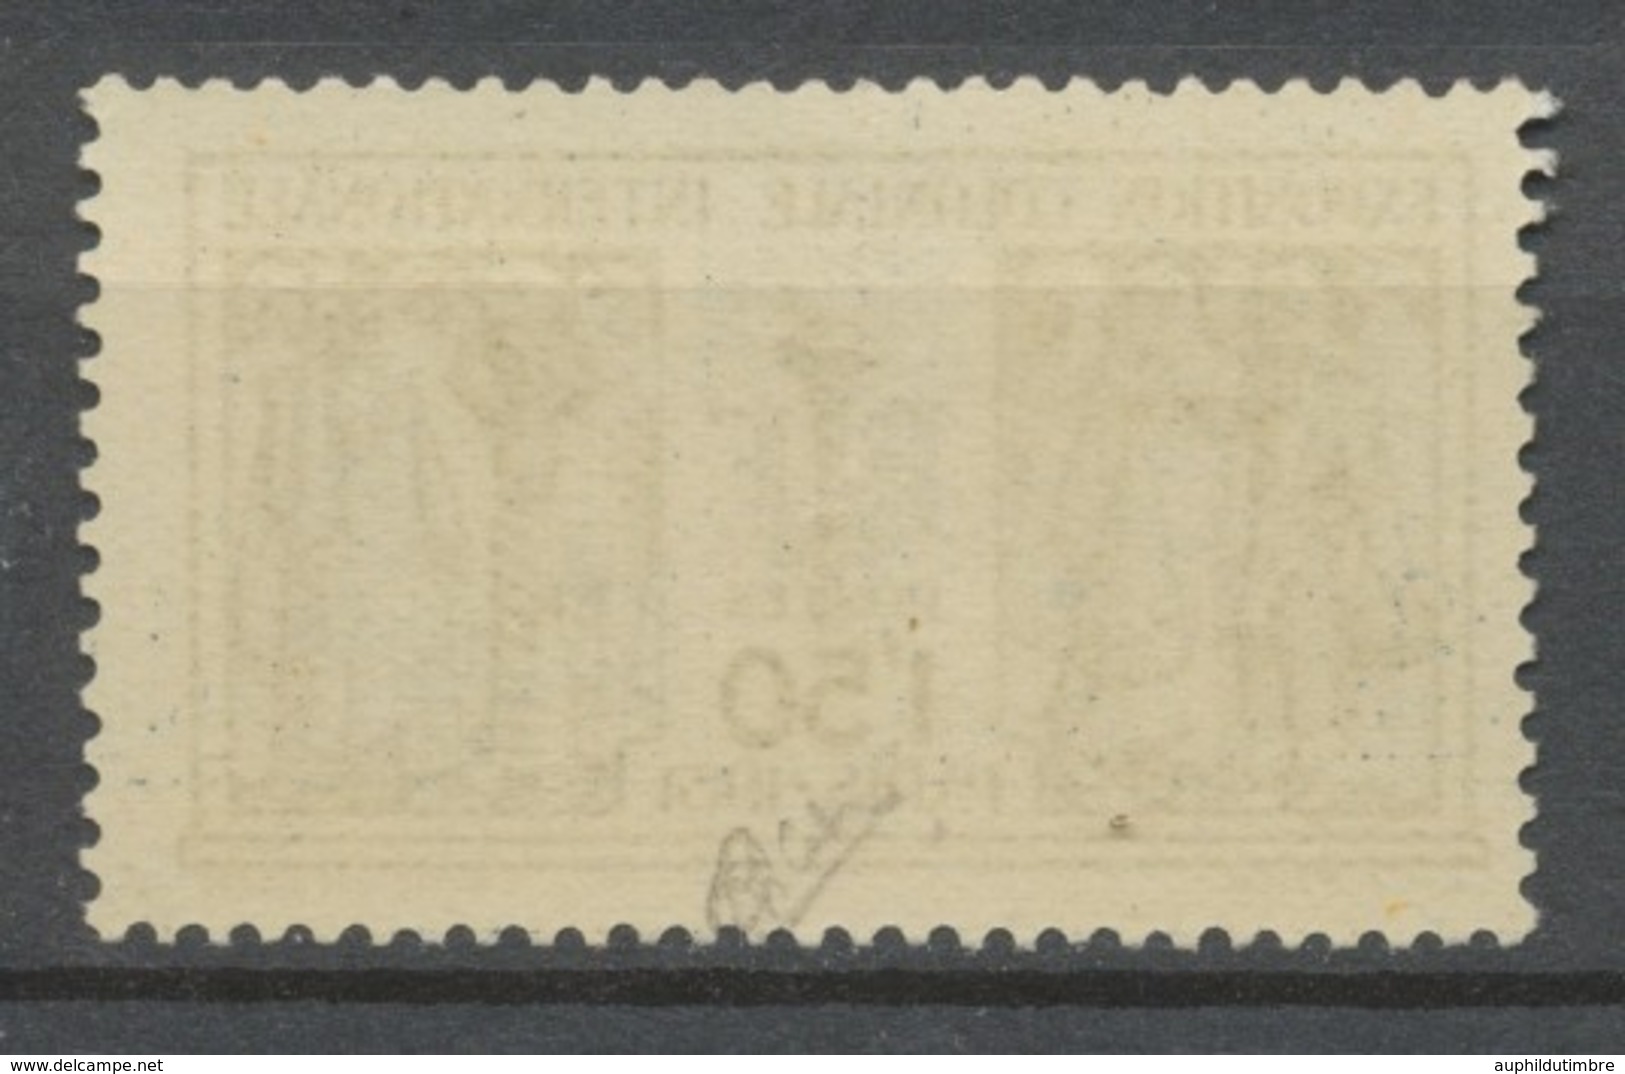 FRANCE N°274 Expo Coloniale De Paris NEUF LUXE** SIGNE CALVES COTE 110€. Photo Exemple, Plusieurs Exemplaires Disp P1150 - Unused Stamps